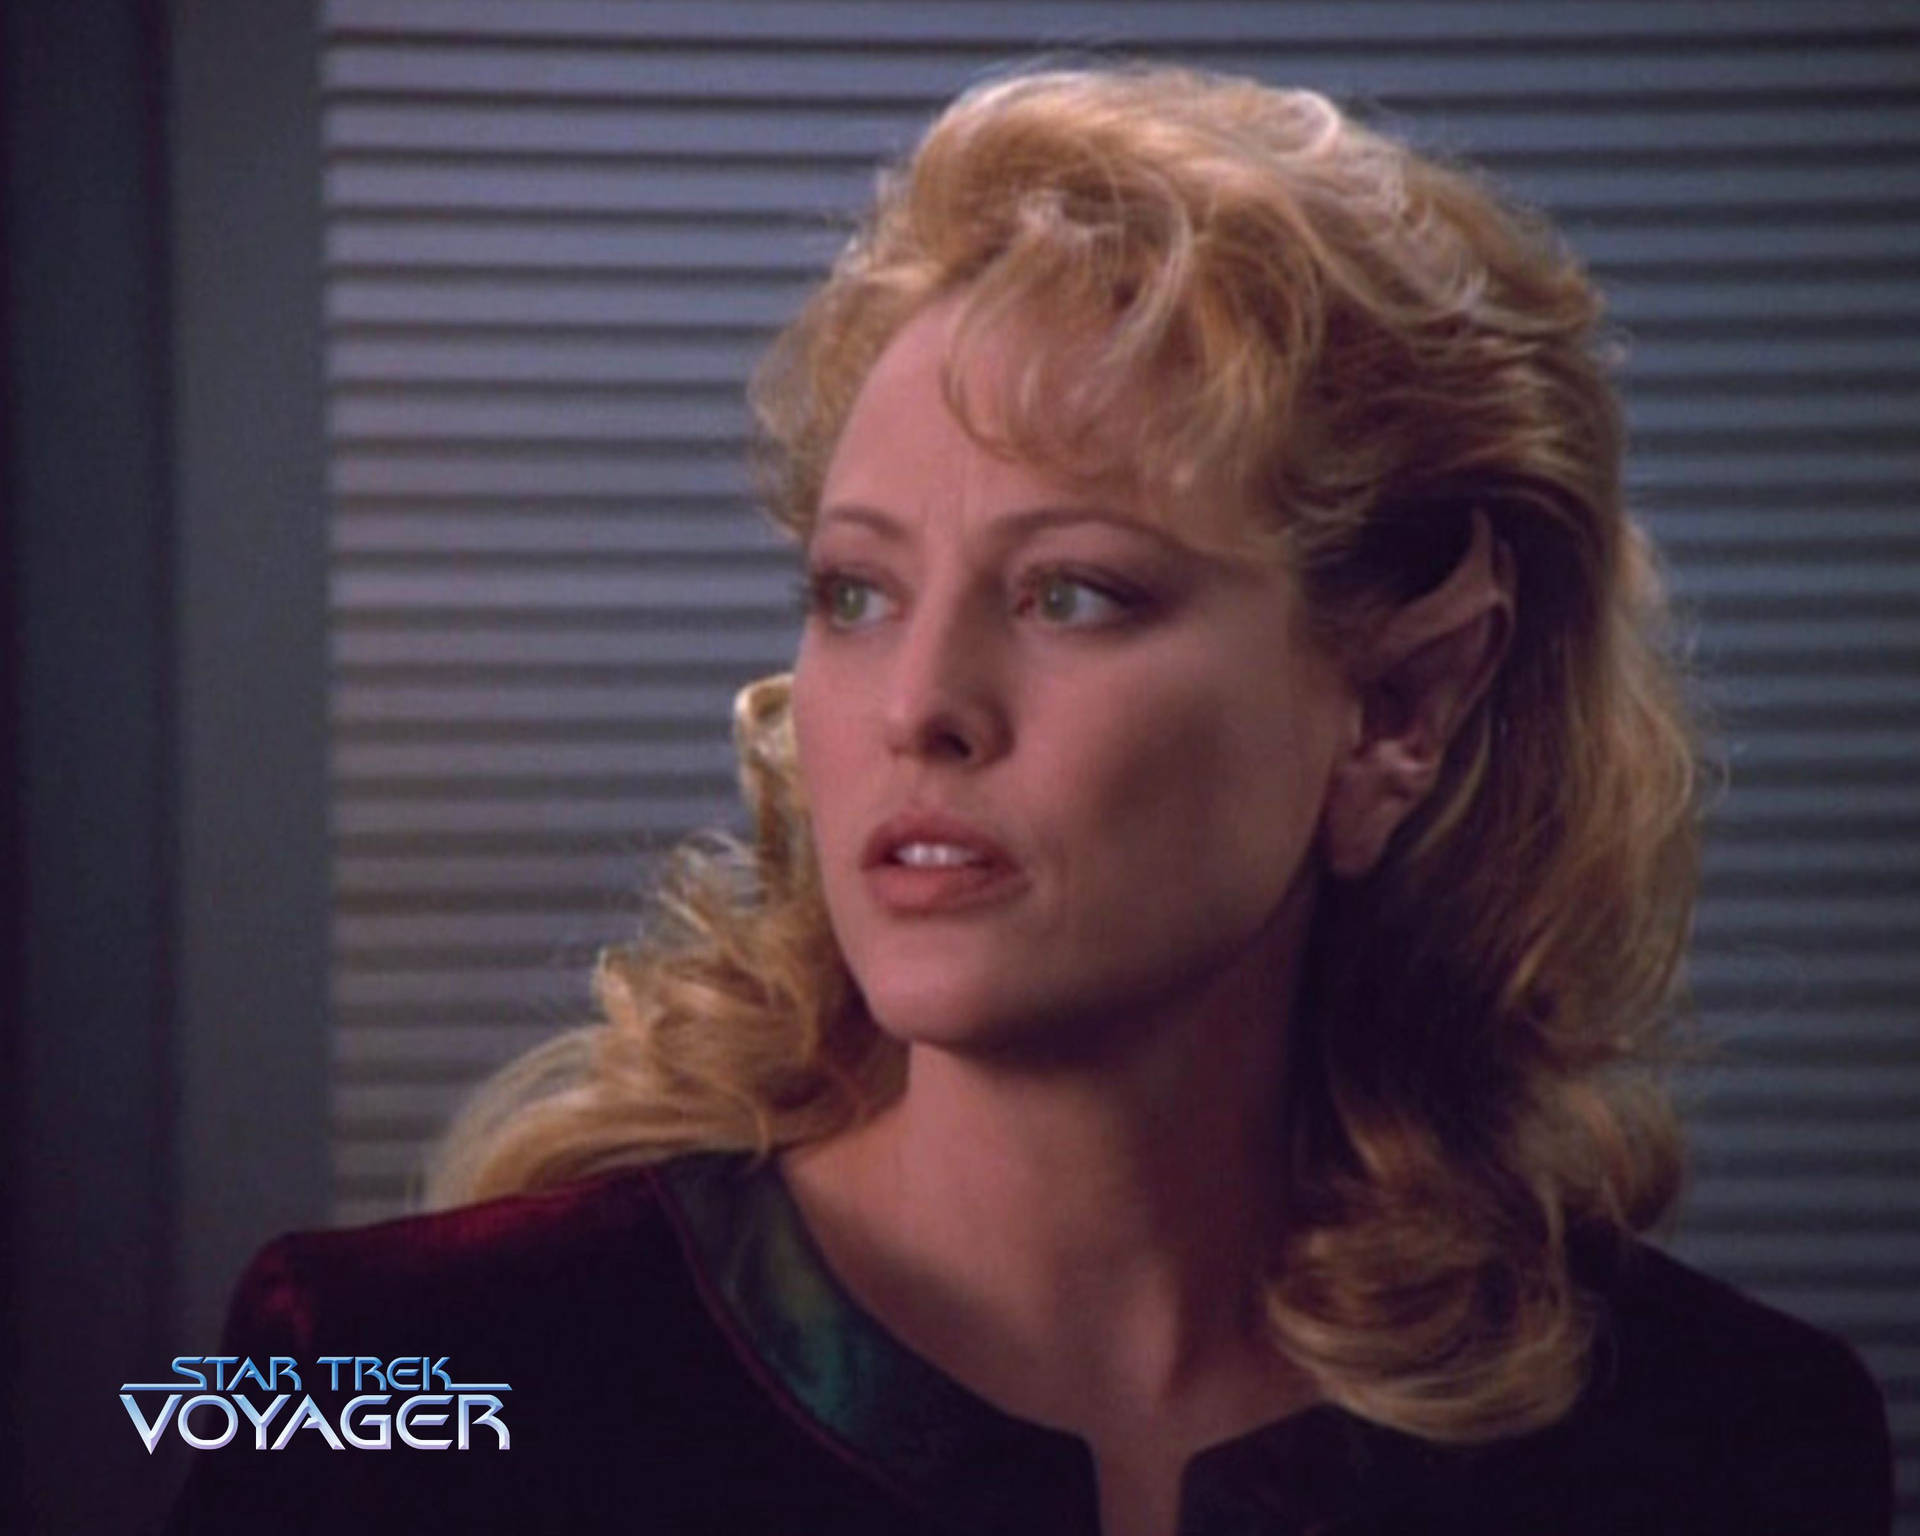 Virginia Madsen As Kellin In Star Trek: Voyager Background